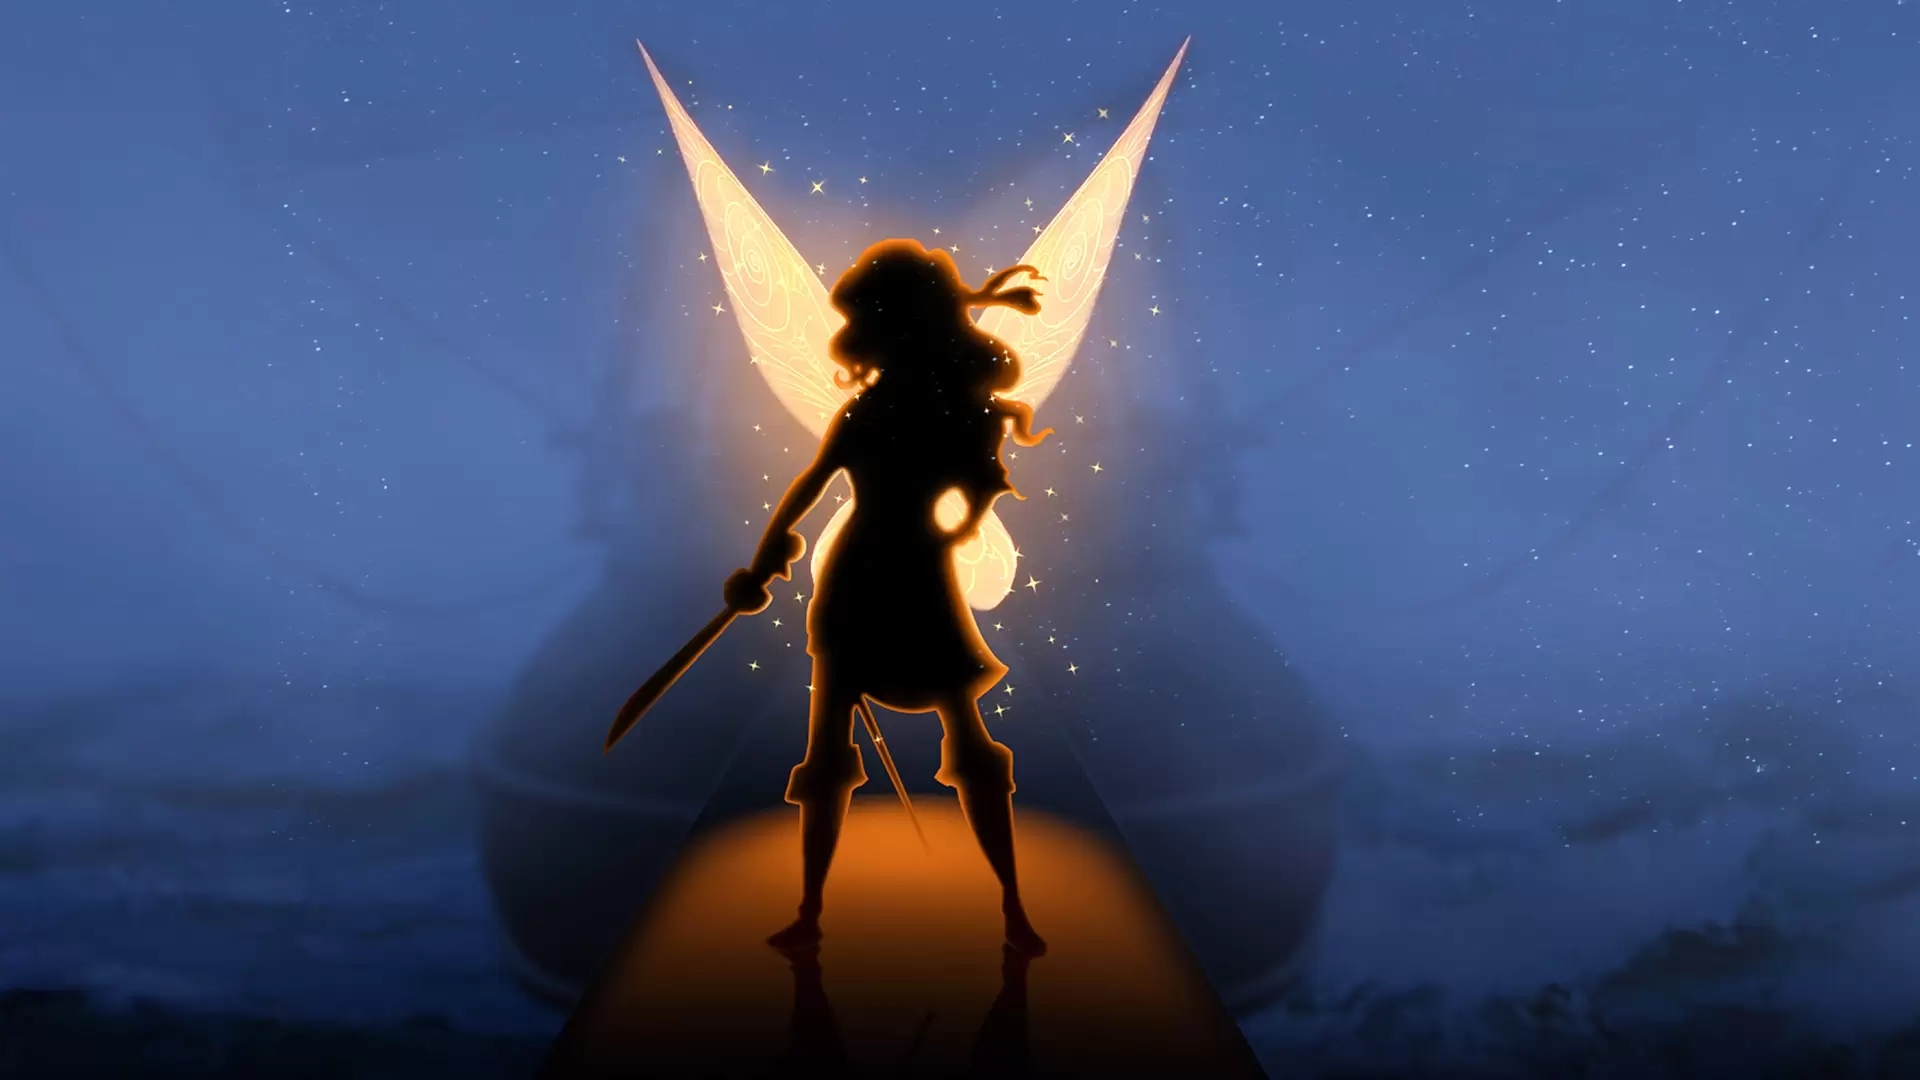 دانلود انیمیشن The Pirate Fairy 2014 (دزدان دریایی پری) با زیرنویس فارسی و تماشای آنلاین